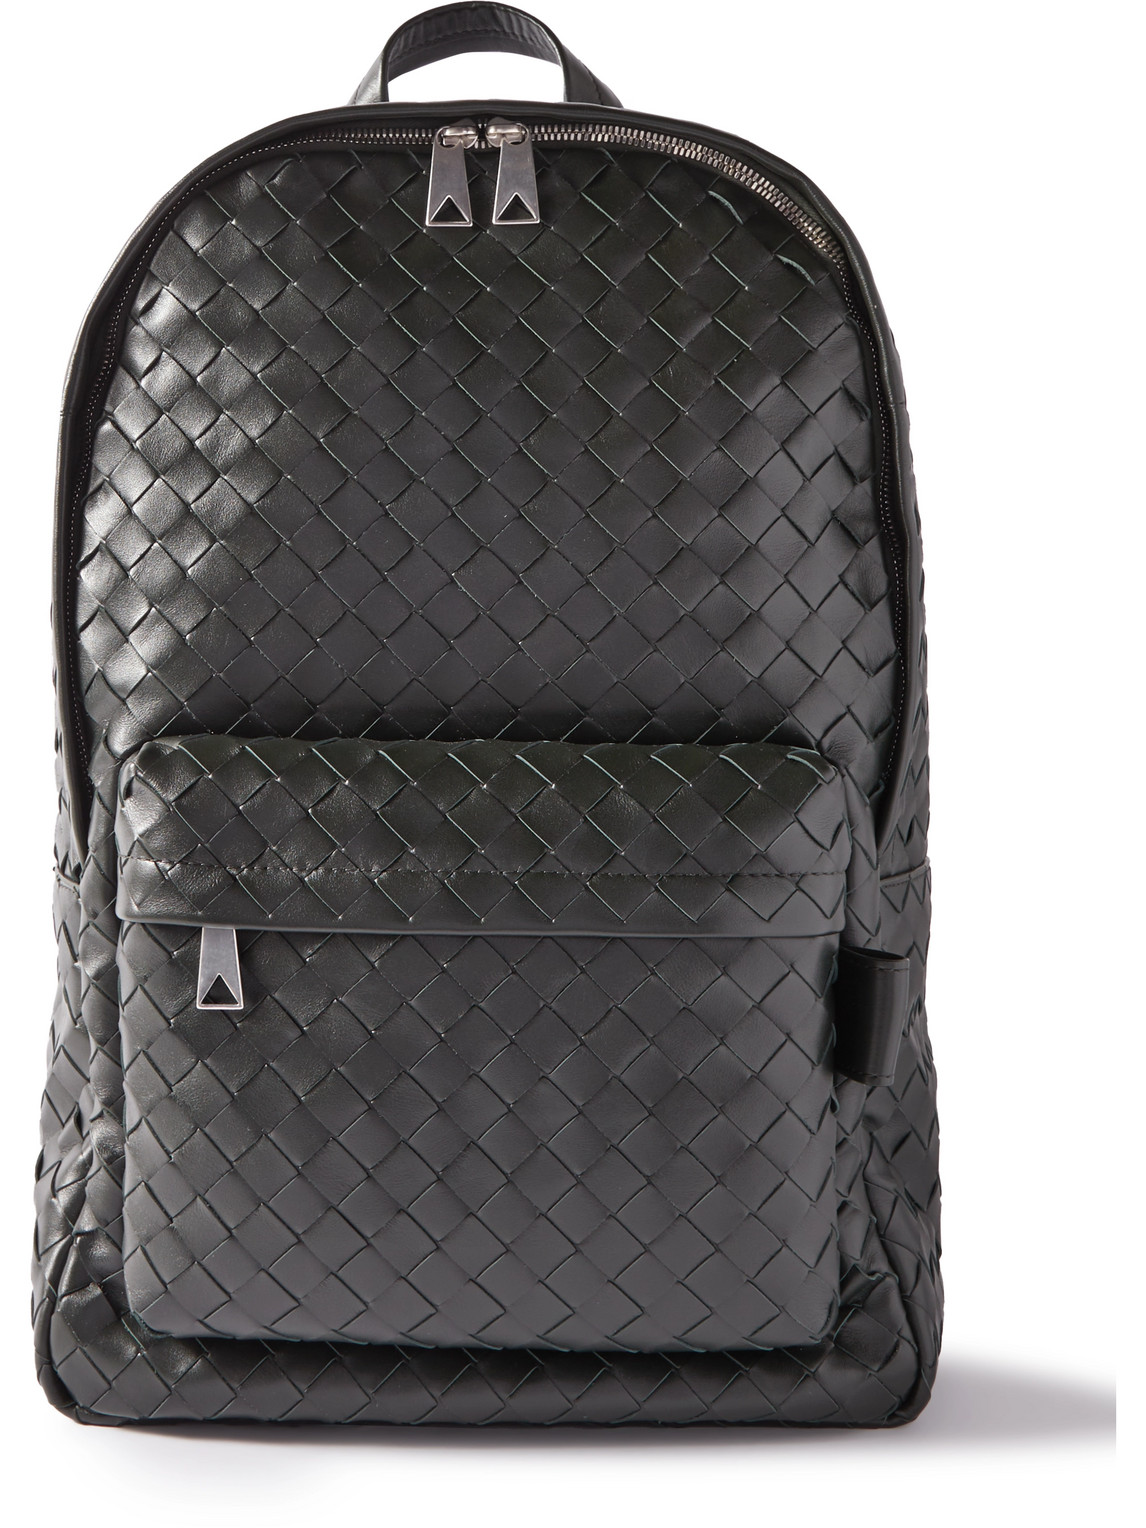 Bottega Veneta Intrecciato Leather Backpack In Black